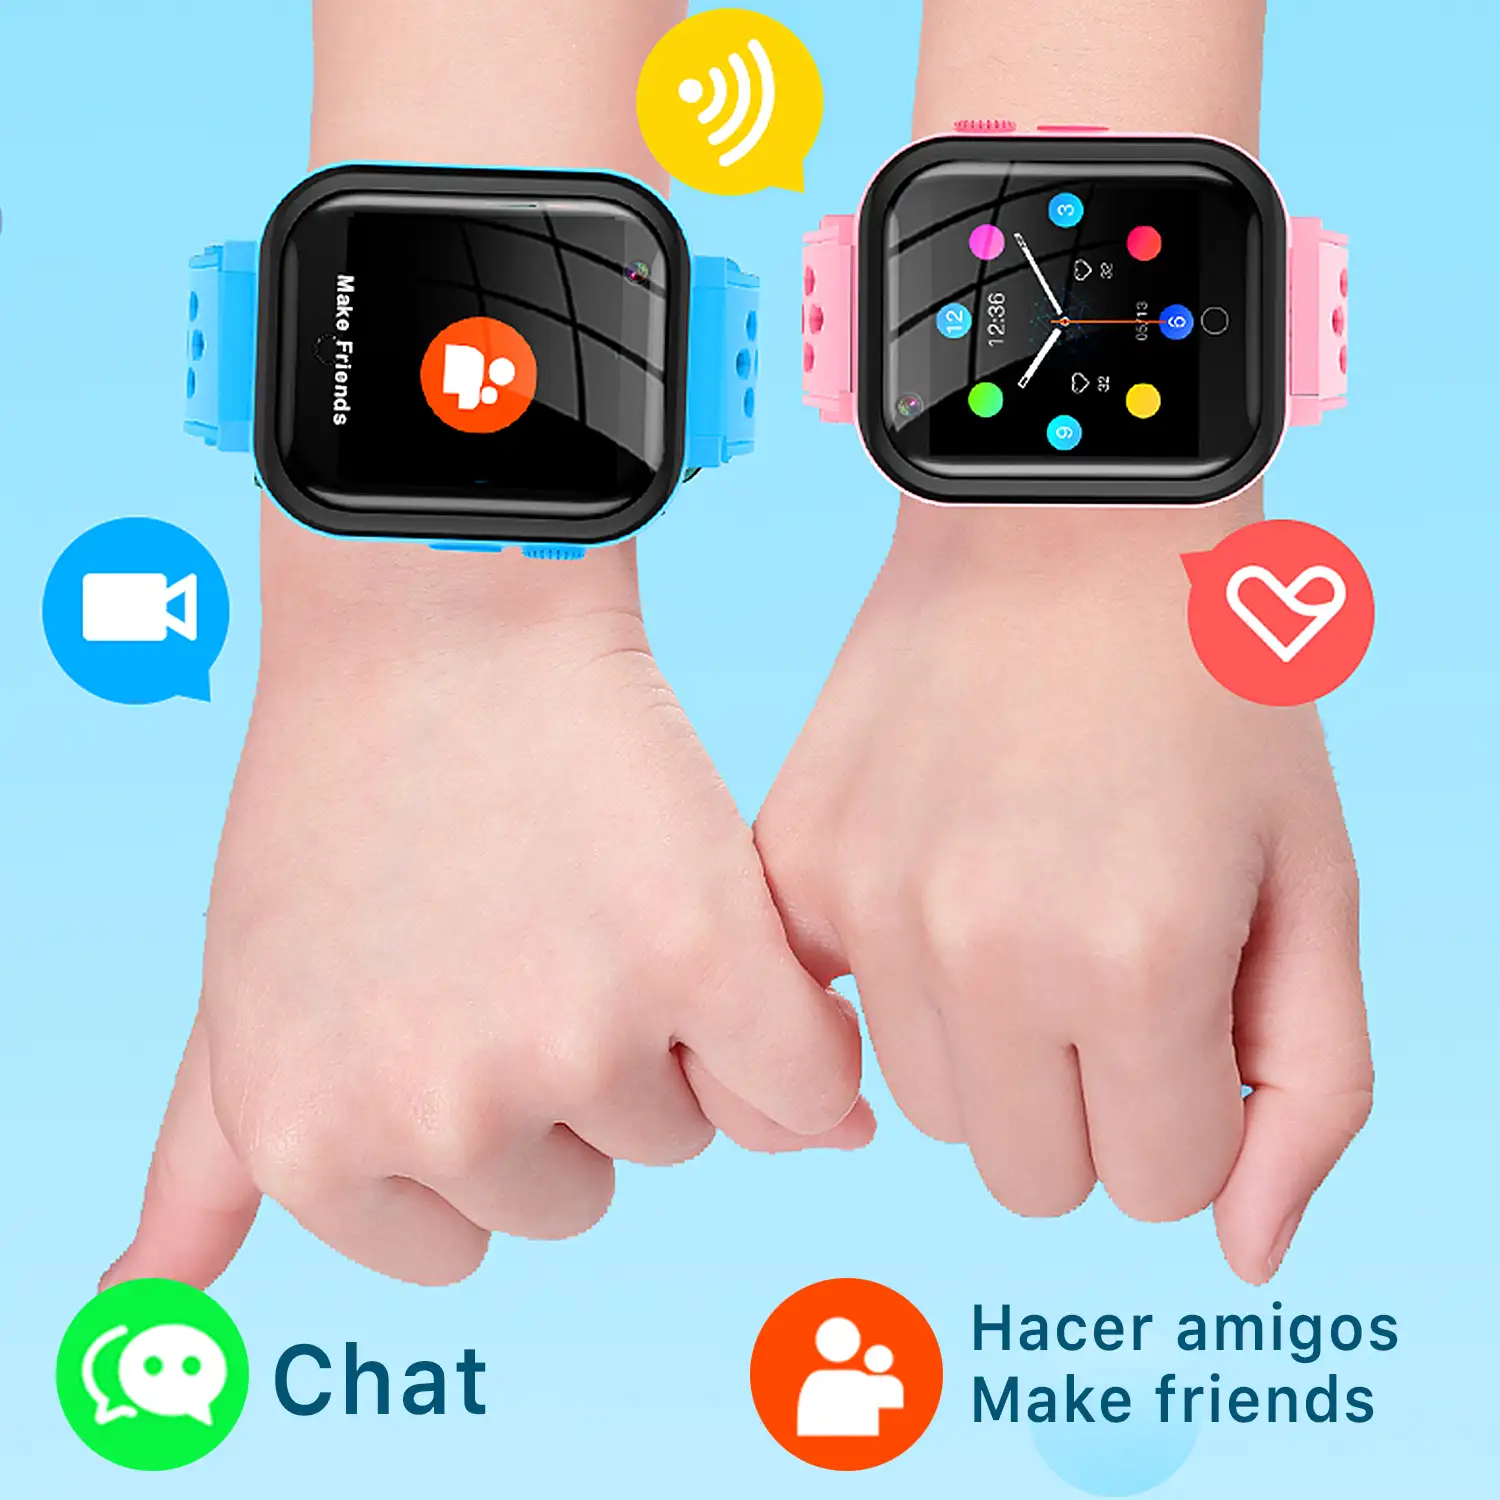 Smartwatch T16 4G localizador GPS,Wifi y LBS. Videollamada, micro chat, botón SOS.